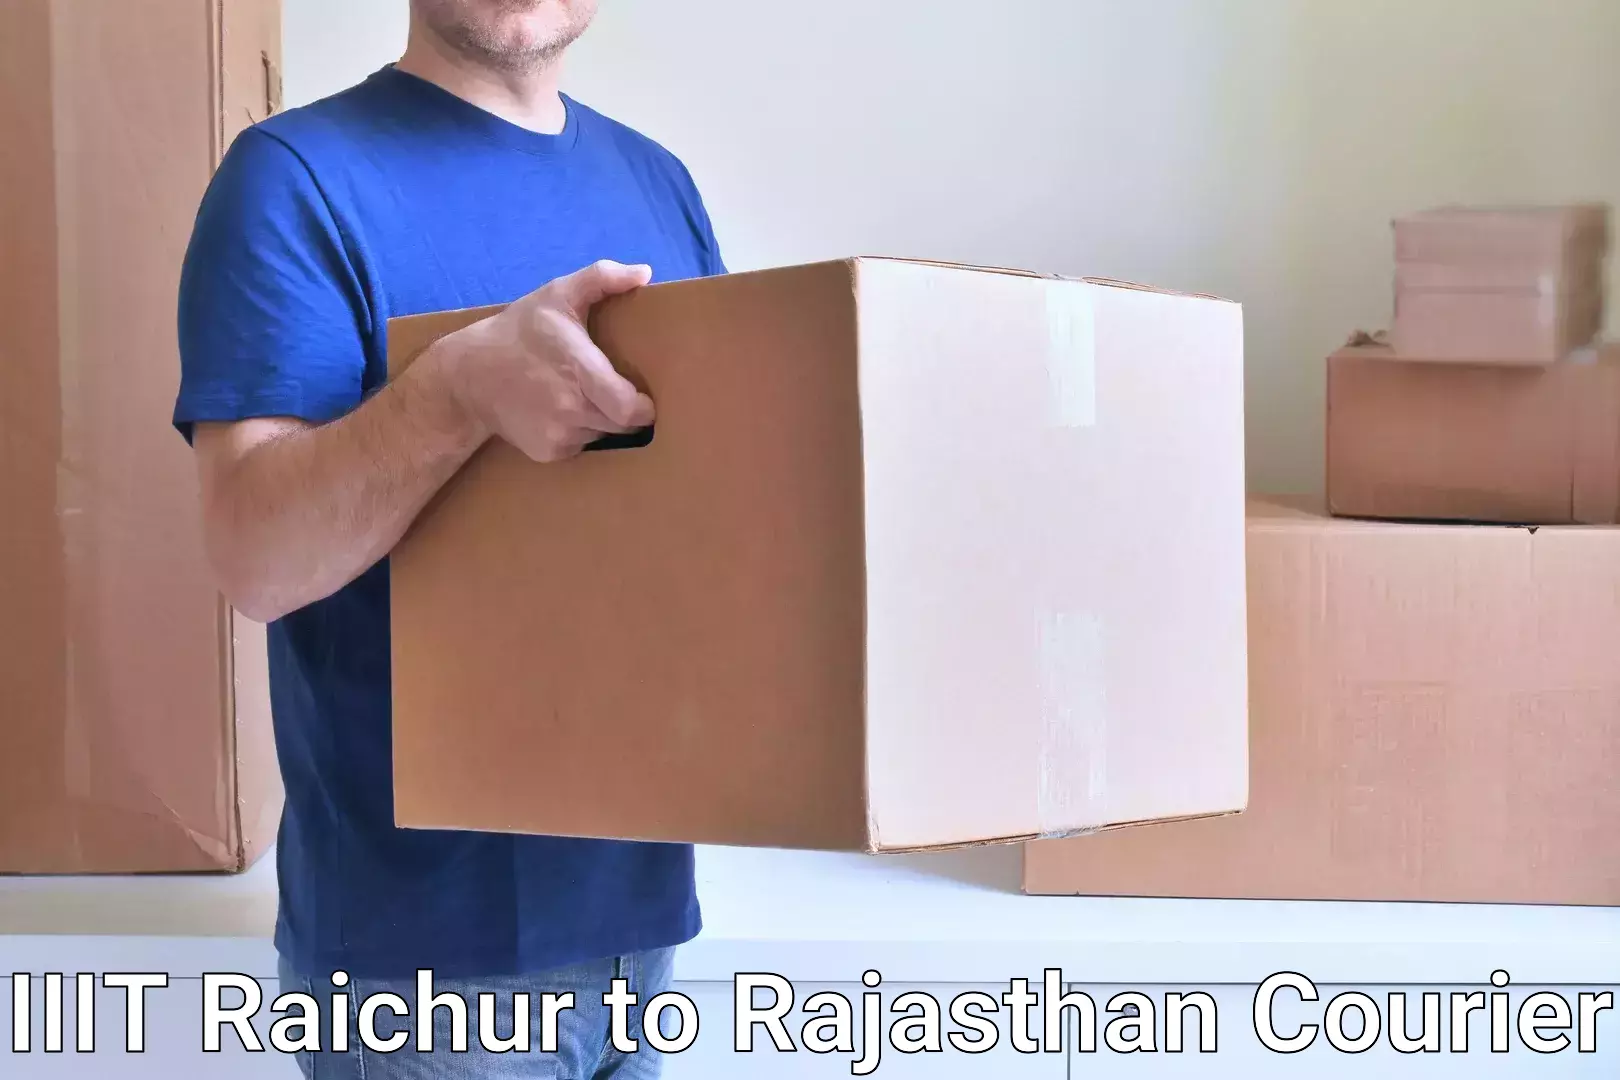 Trackable shipping service IIIT Raichur to Banar